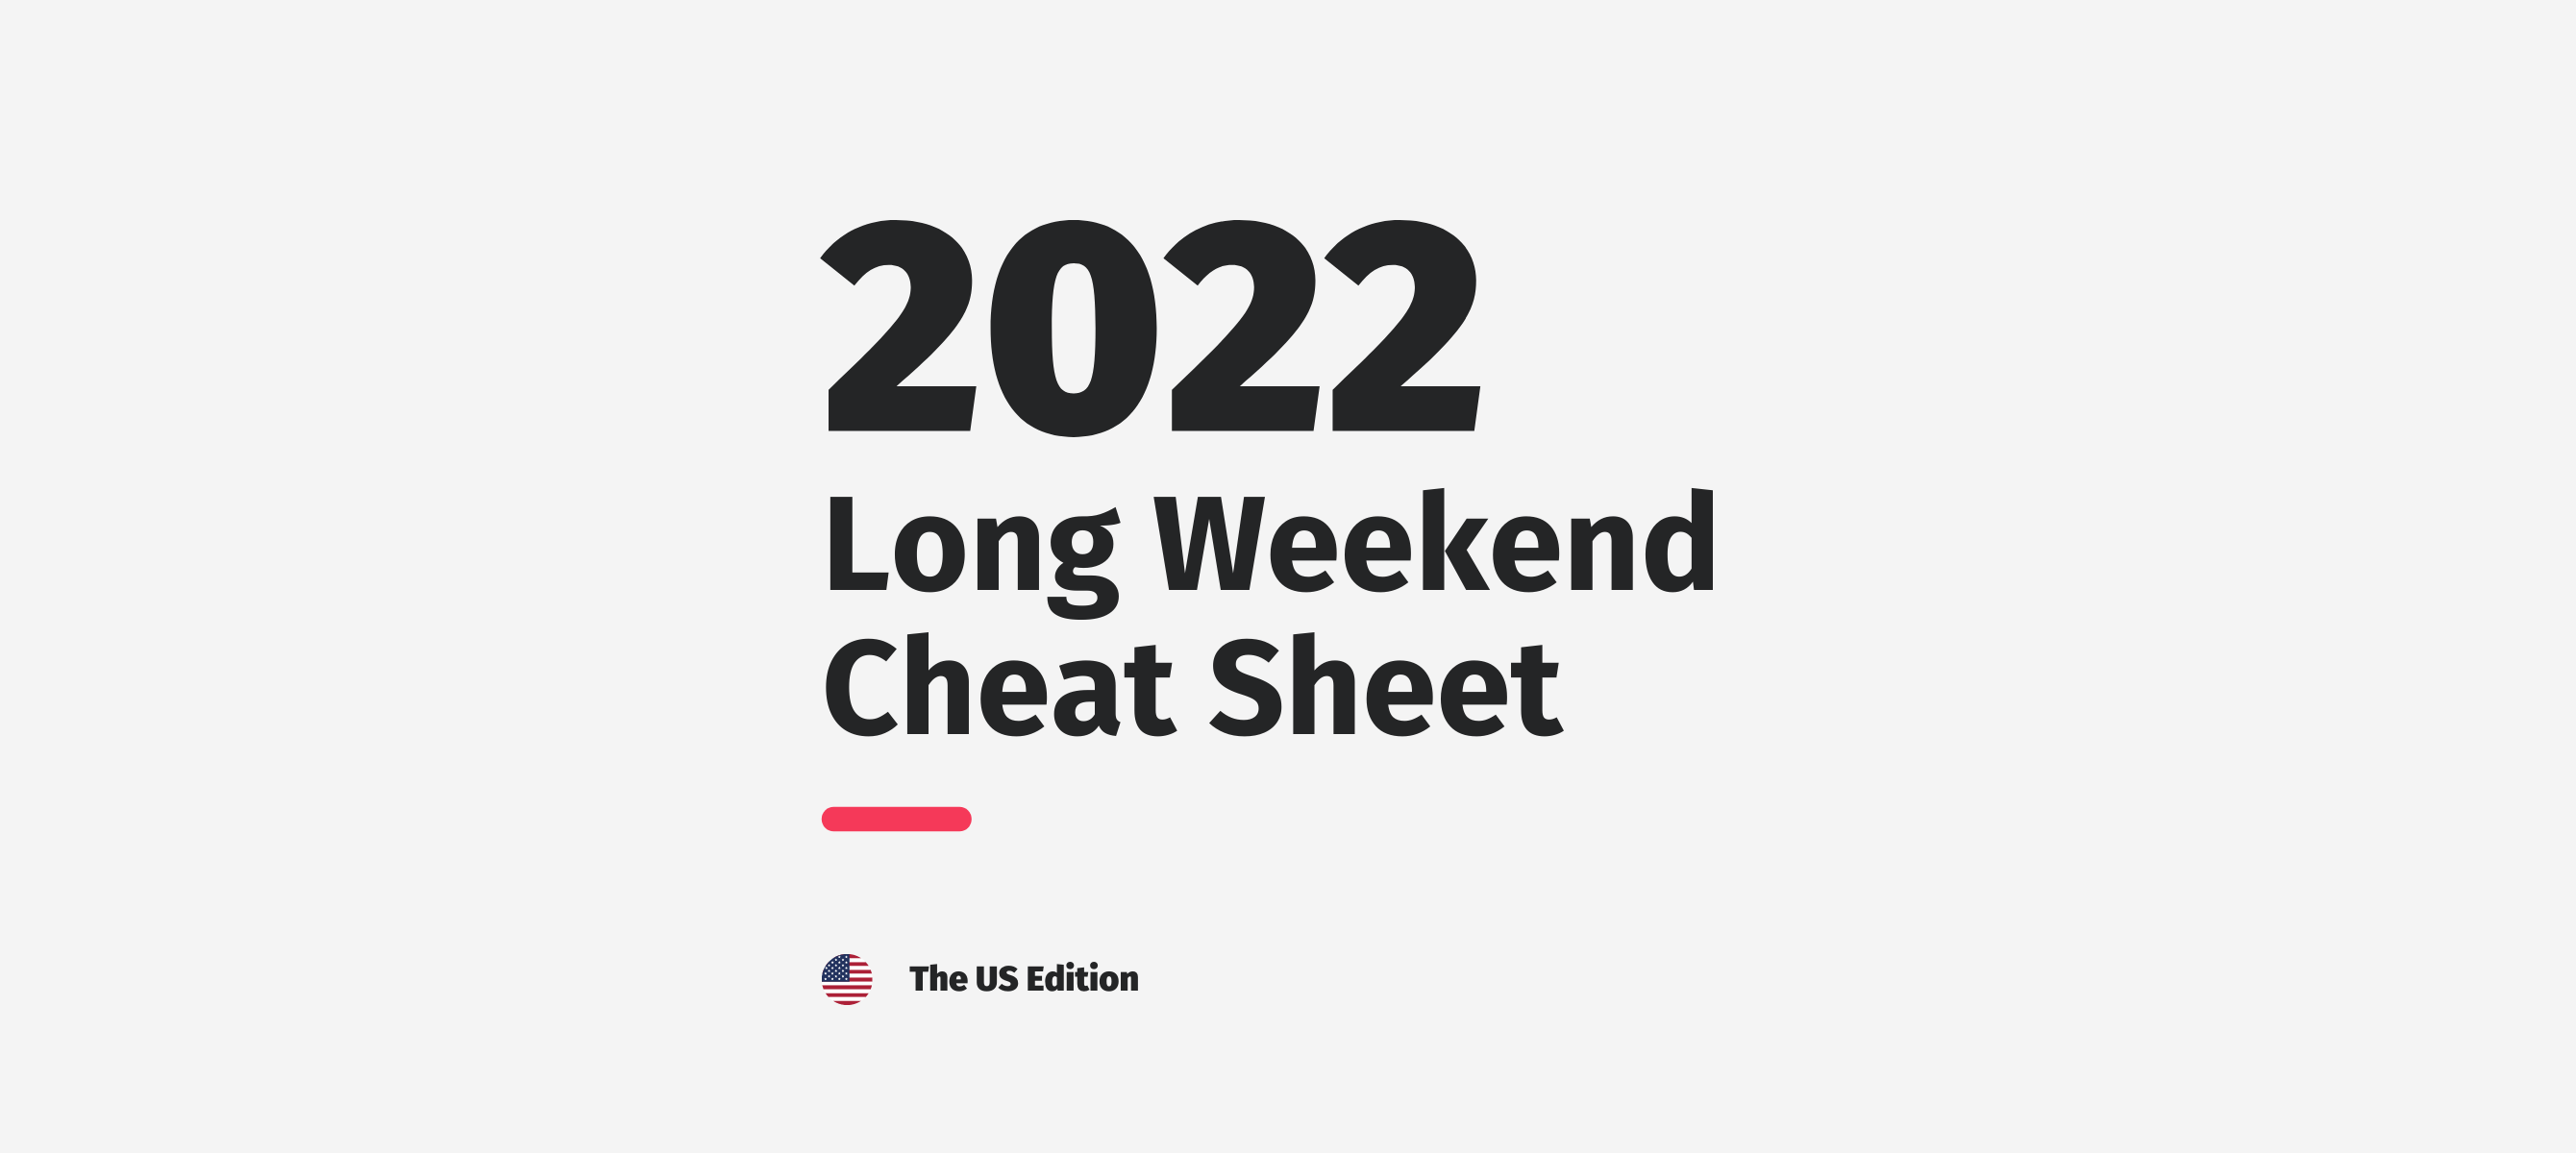 Lond Weekends Cheat Sheet 2022.